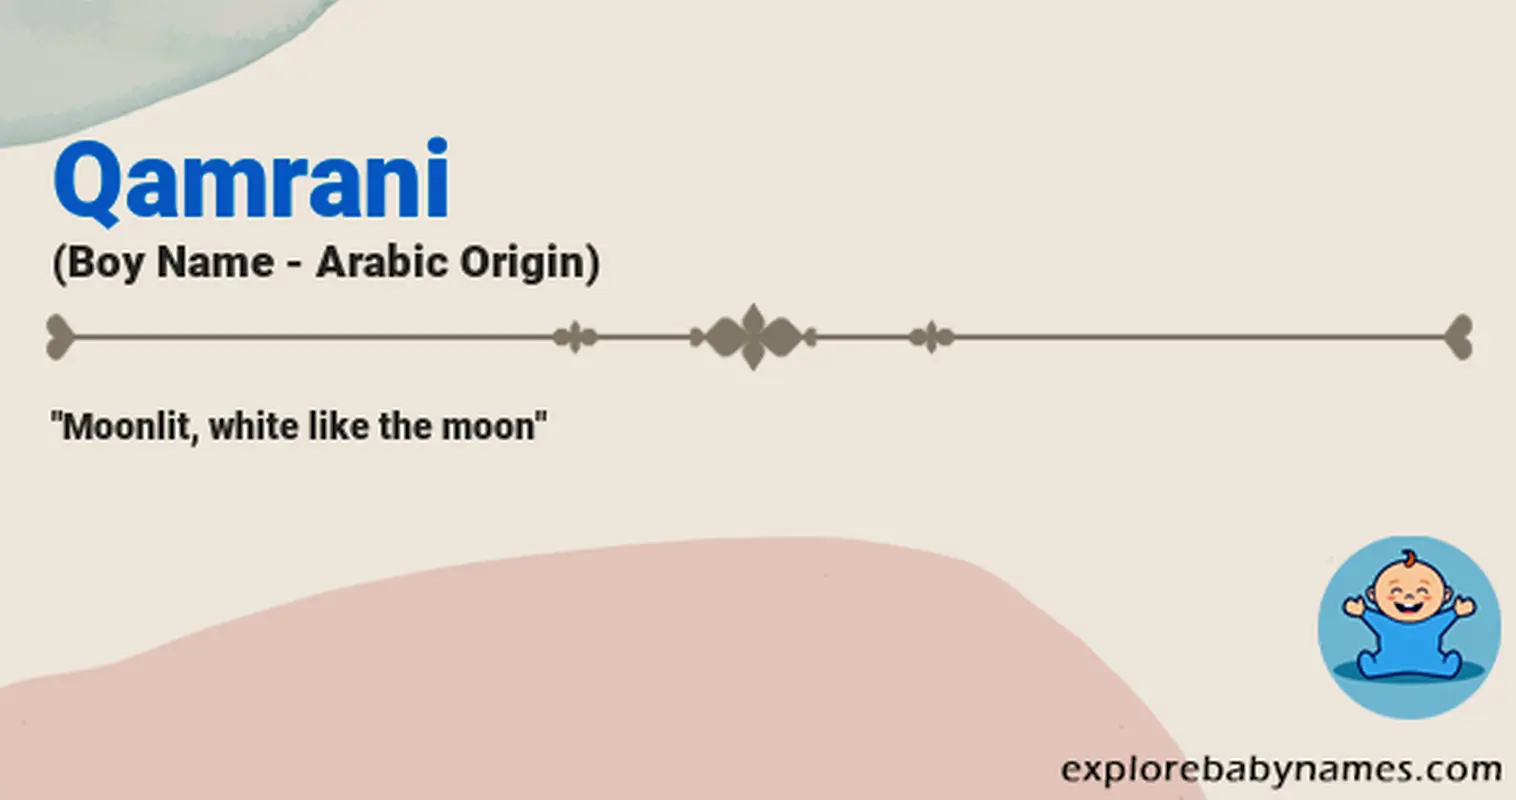 Meaning of Qamrani